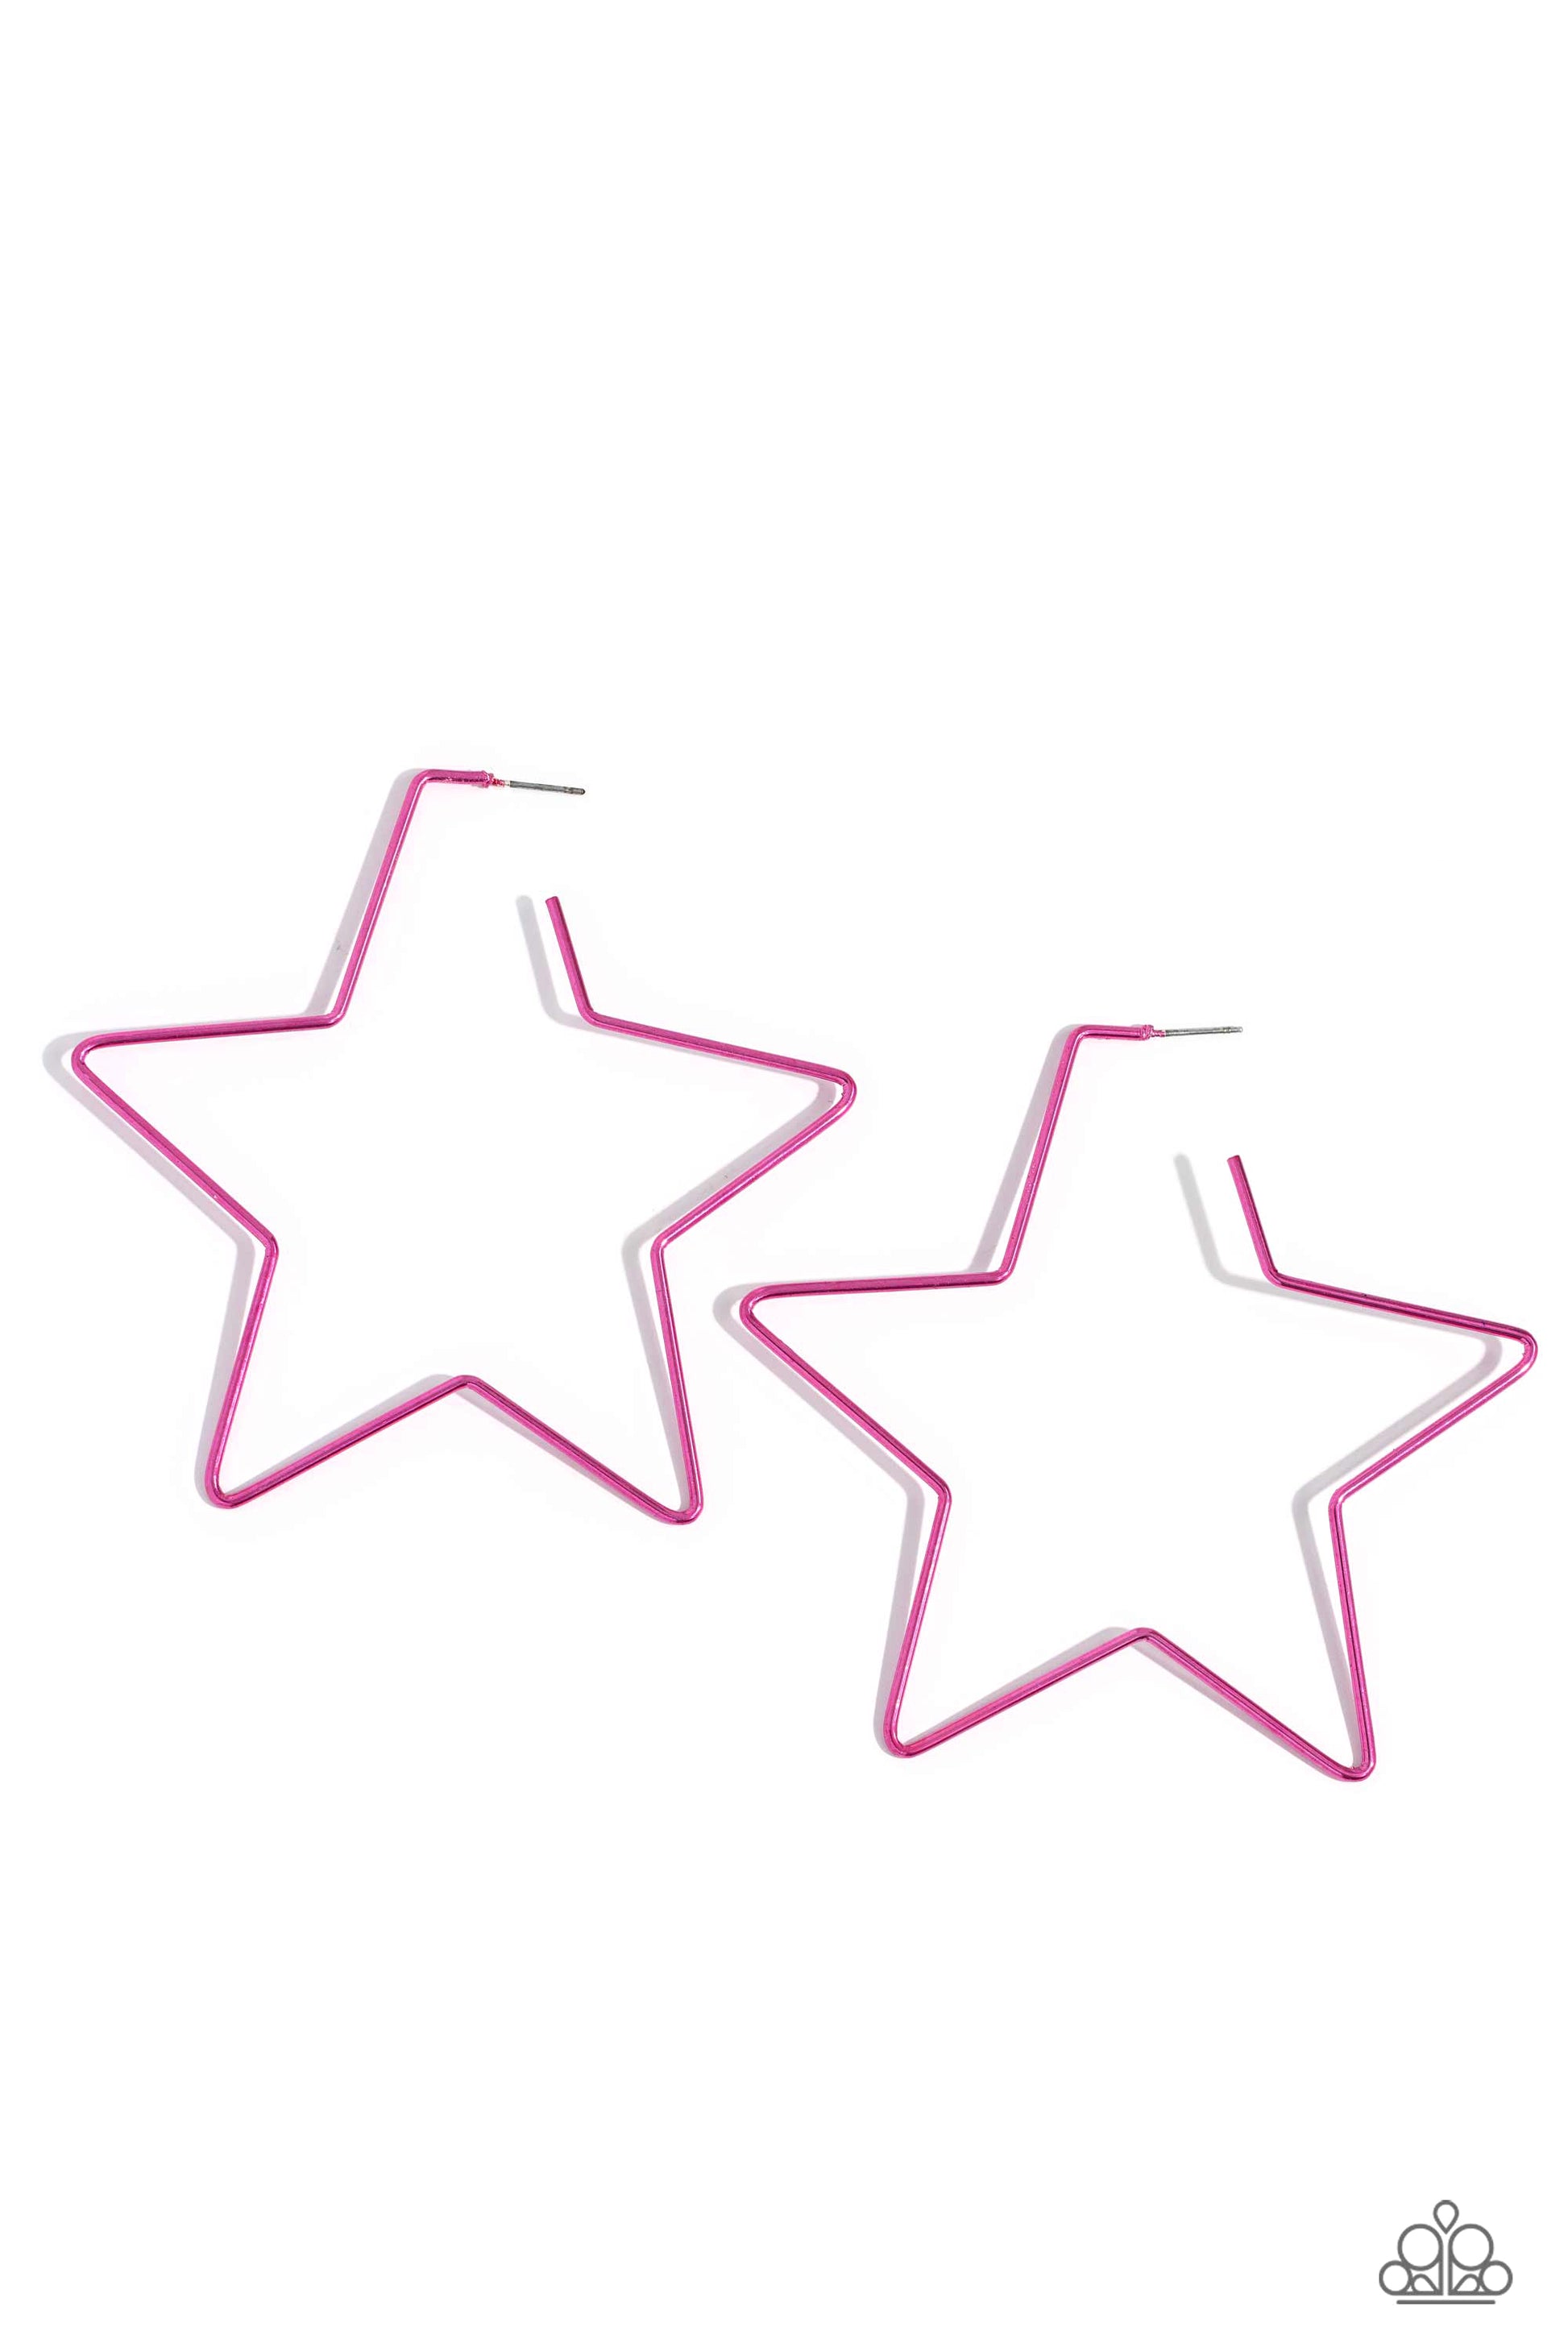 Starstruck Secret - pink - Paparazzi earrings